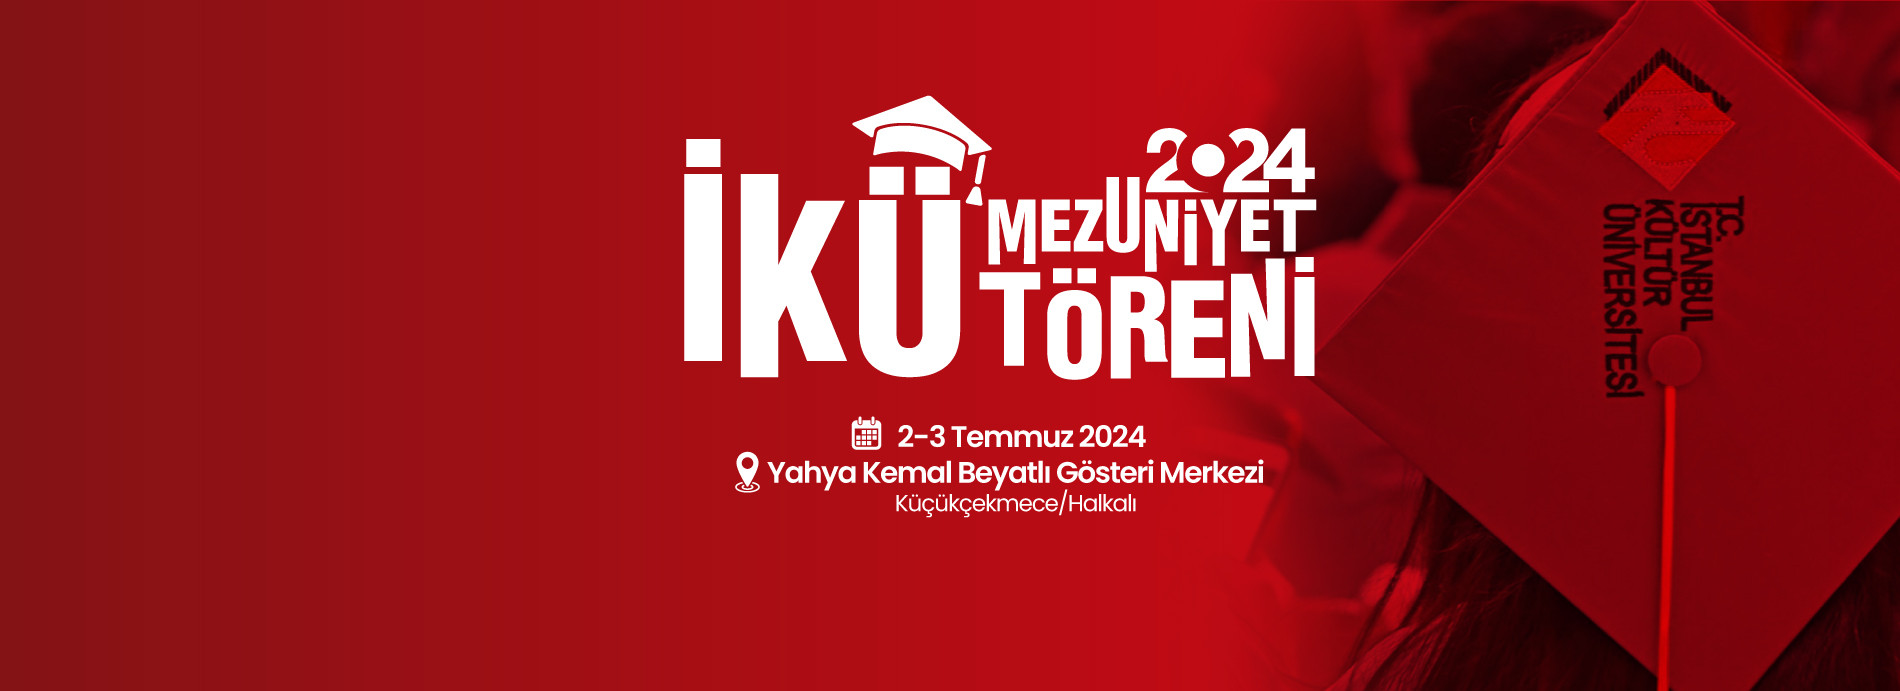 İstanbul Kültür Üniversitesi 2023-2024 Mezuniyet Töreni